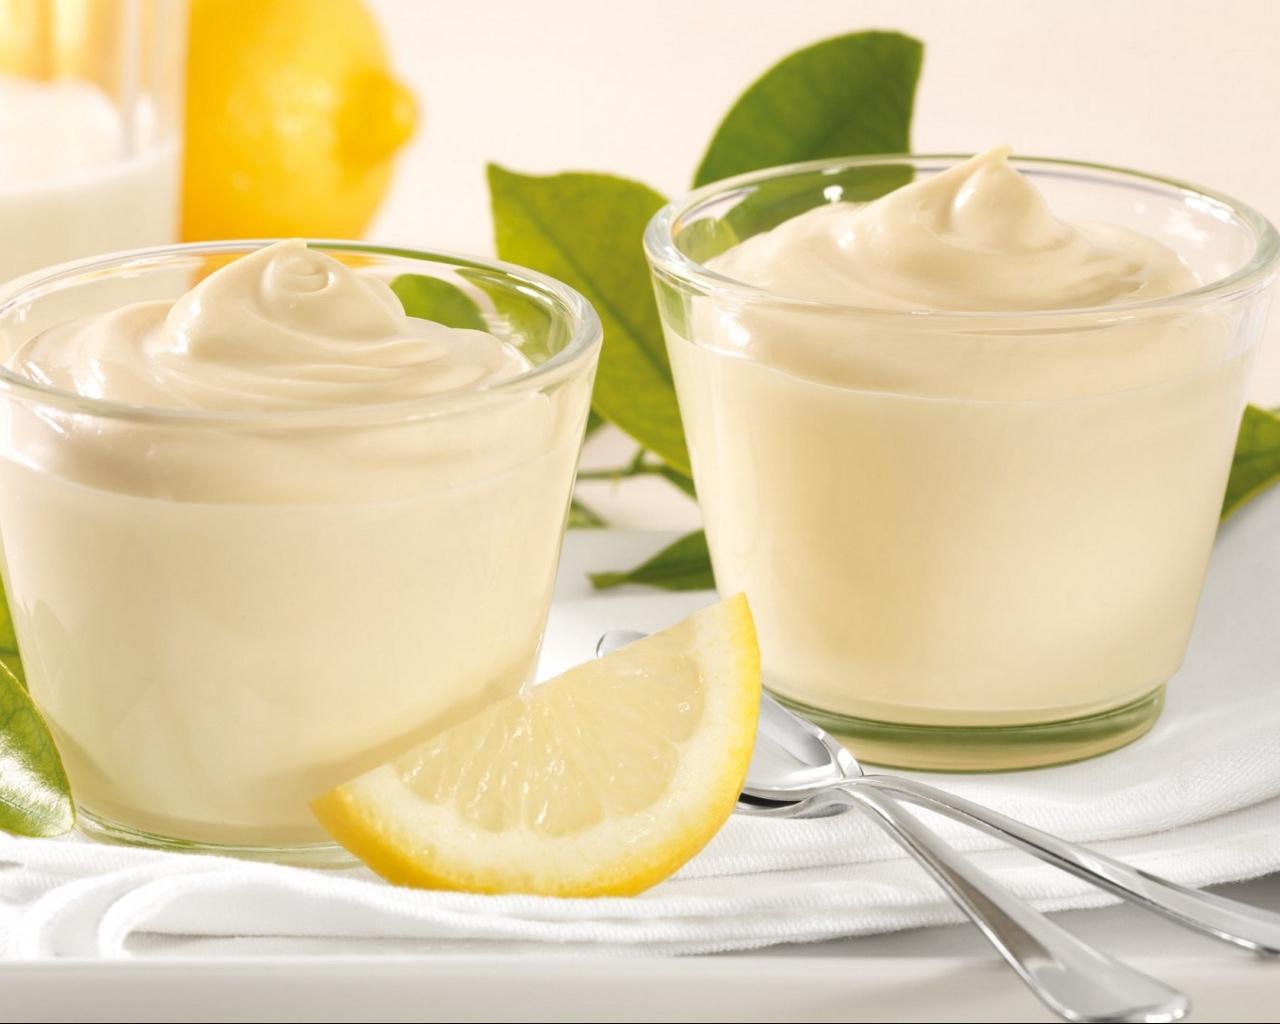 Download wallpaper 1280x1024 lemon, cream, dessert standard 5:4 HD